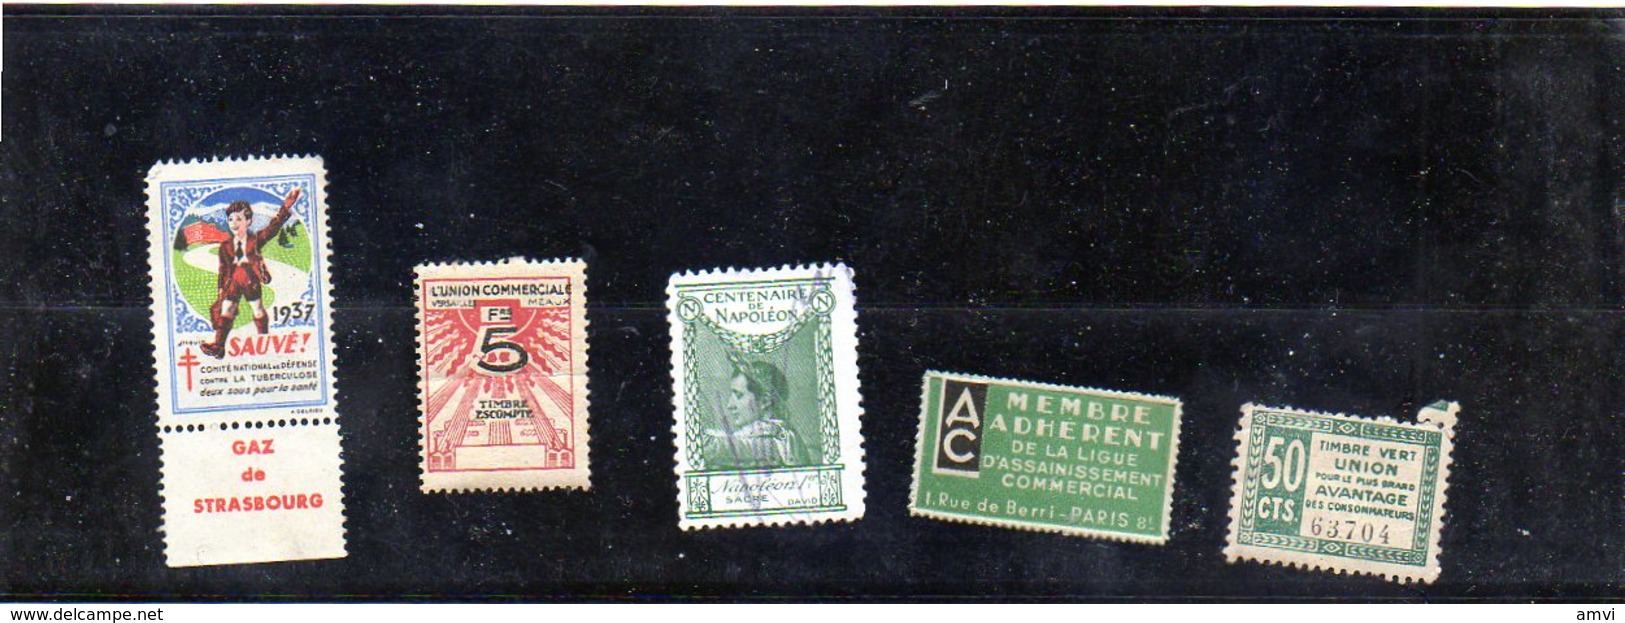 3876 - 5 Vignettes Tuberculose  1937  - Ligue Assainissement - Union Commerciale Plié Centenaire Napoleon Timbre Vert - Fantasie Vignetten